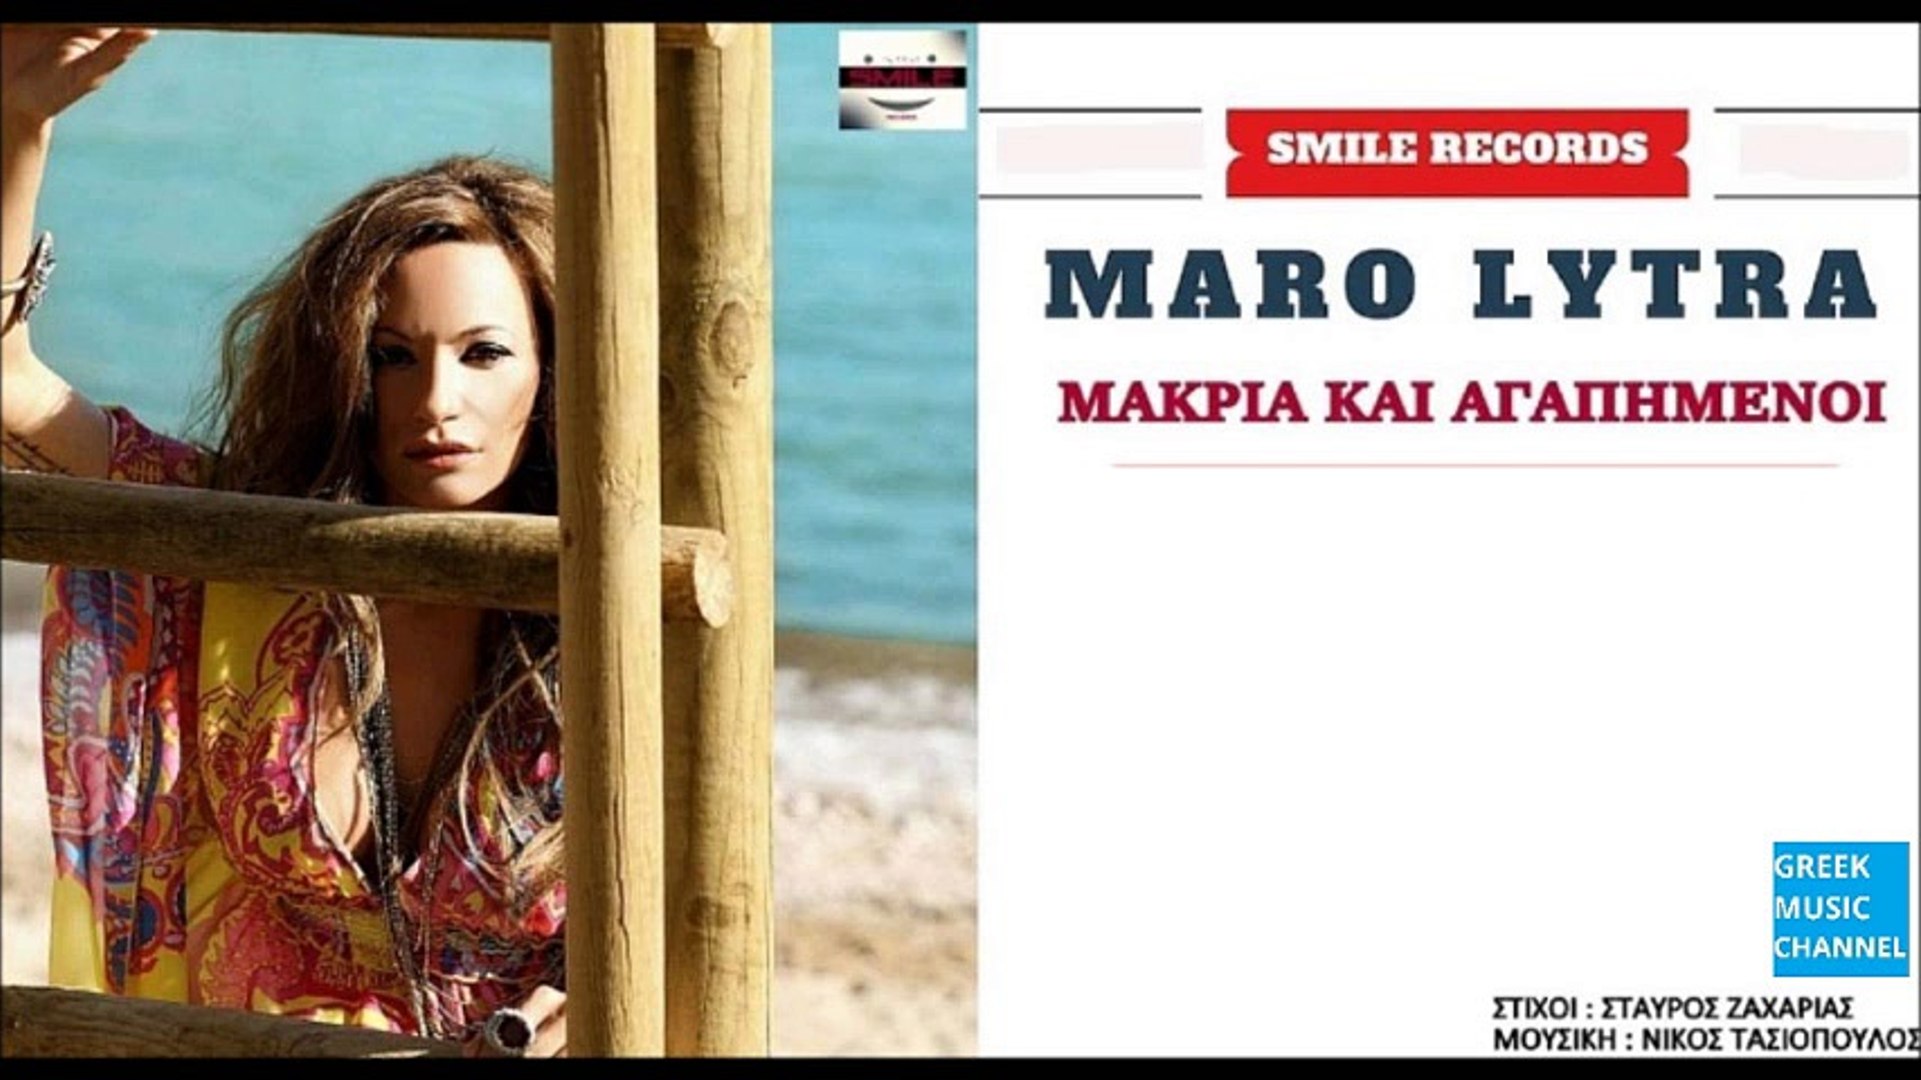 Μάρω Λύτρα - Μακριά Και Αγαπημένοι || Maro Lytra - Makria Kai Agapimeni  (New Single 2016) - video Dailymotion